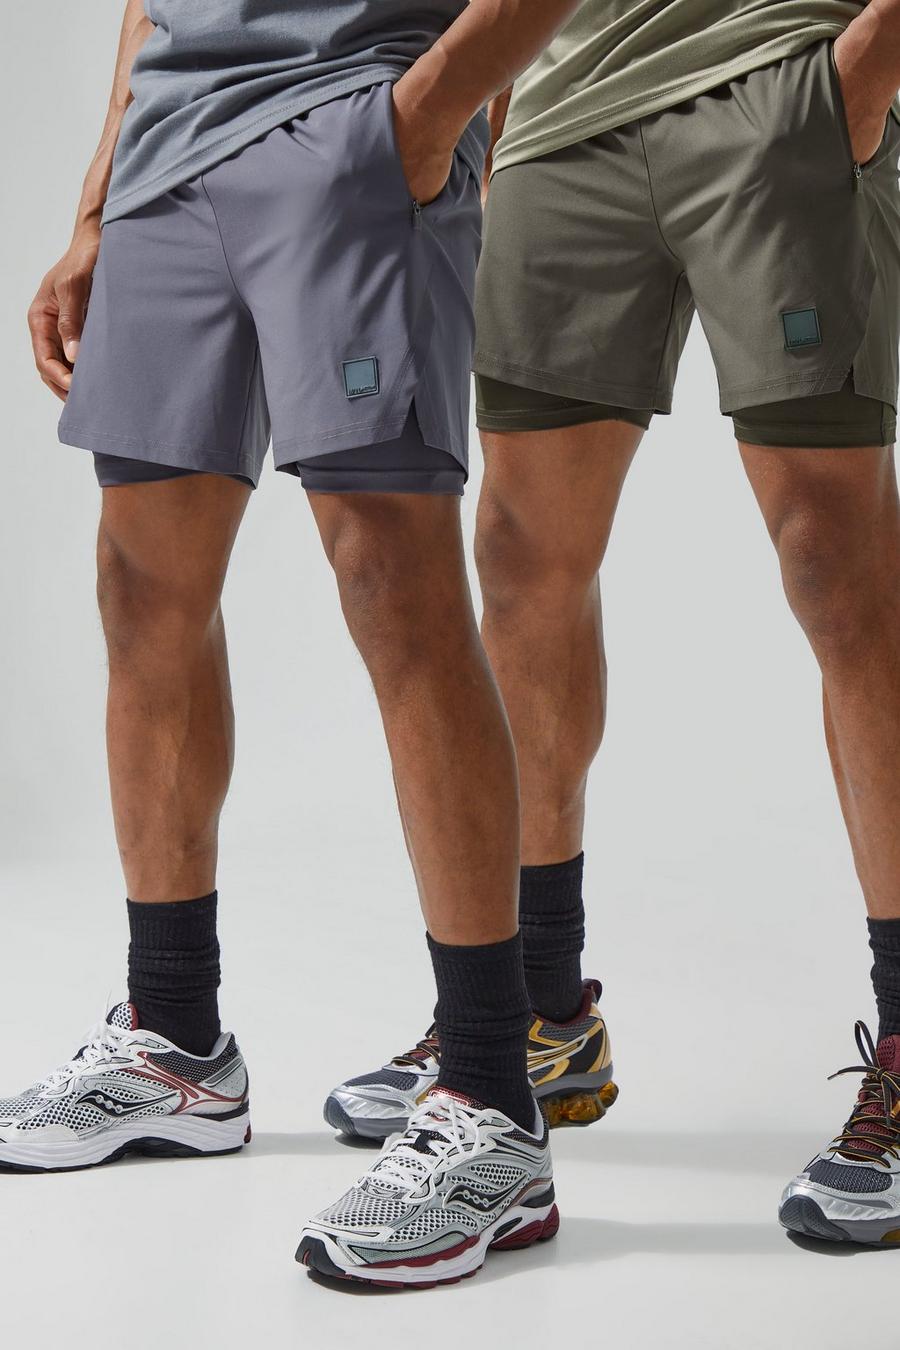 Pack de 2 pantalones cortos MAN Active resistentes 2 en 1, Multi